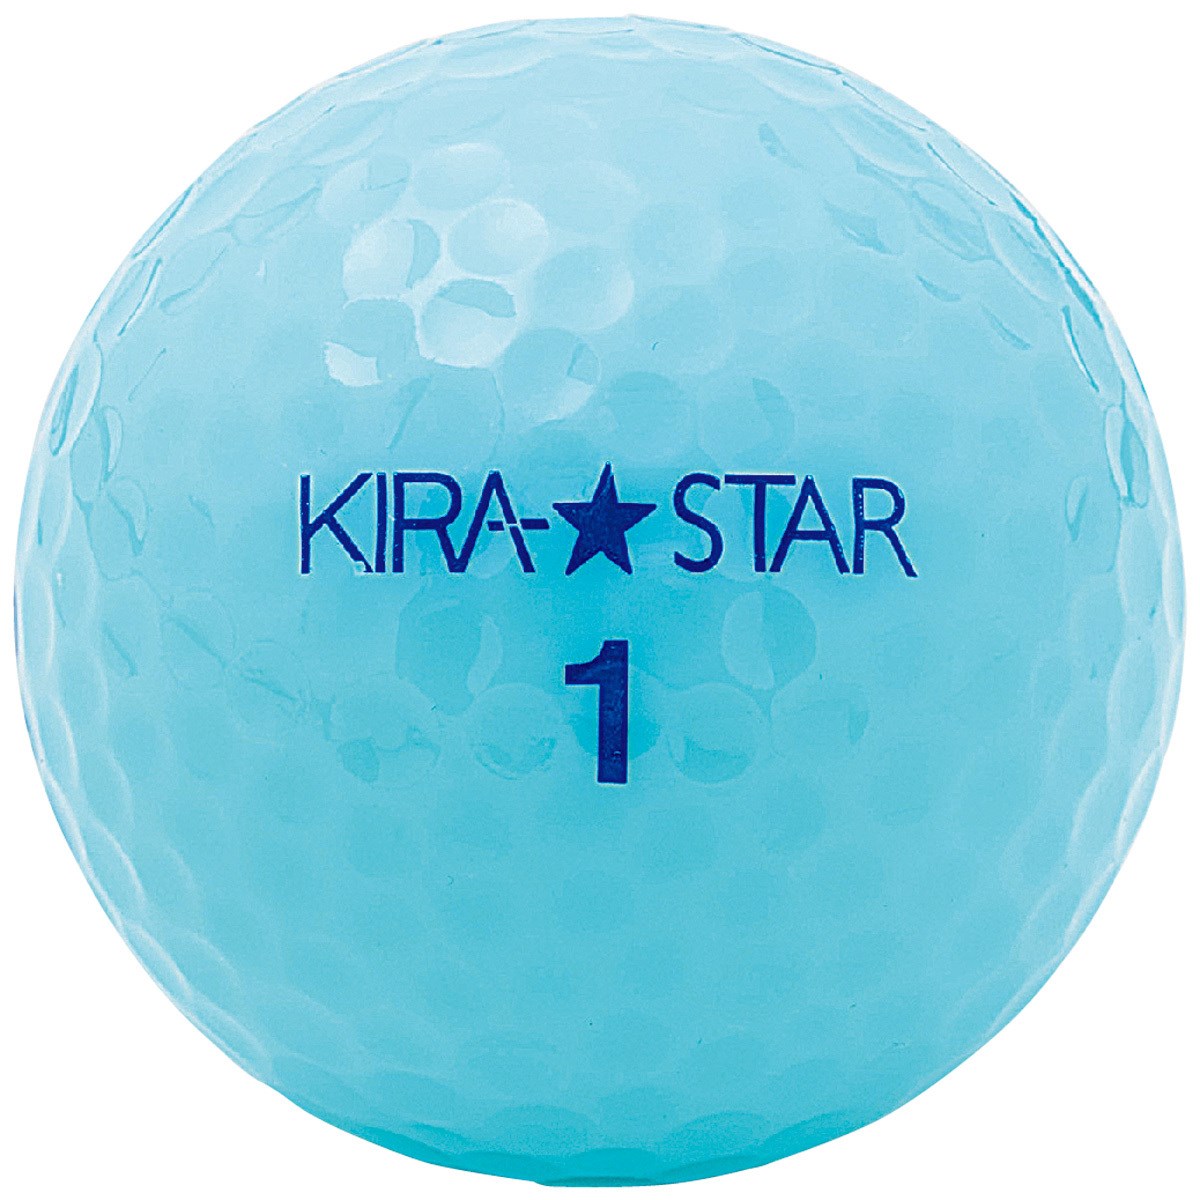 Dショッピング キャスコ Kira Kira Star2 ボール 1ダース 12個入り アクア カテゴリ ゴルフボールの販売できる商品 Gdoゴルフショップ ドコモの通販サイト